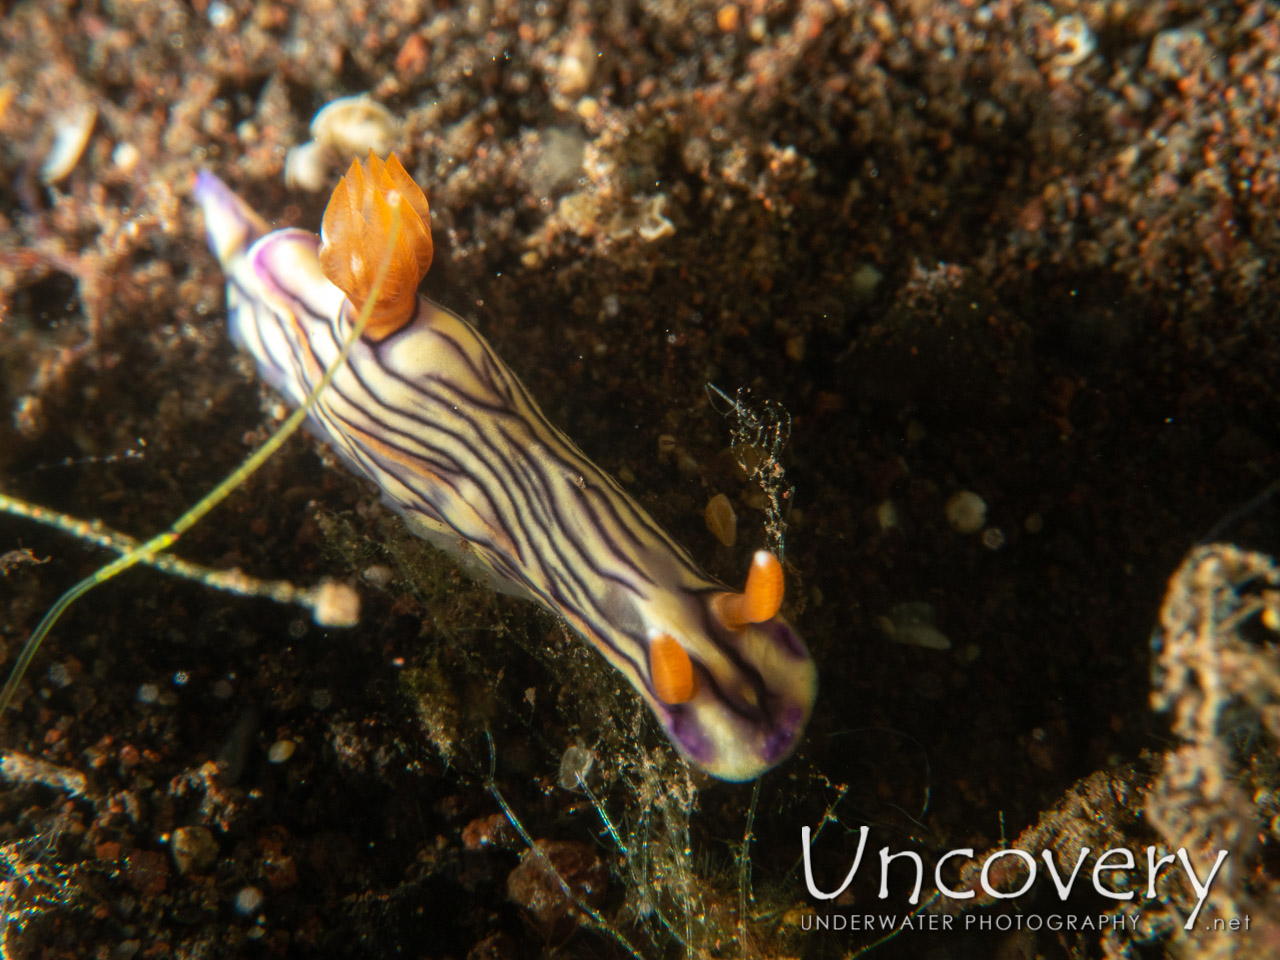 Nudibranch (hypselodoris Nigostriata), photo taken in Indonesia, Bali, Tulamben, Pantai Lahar